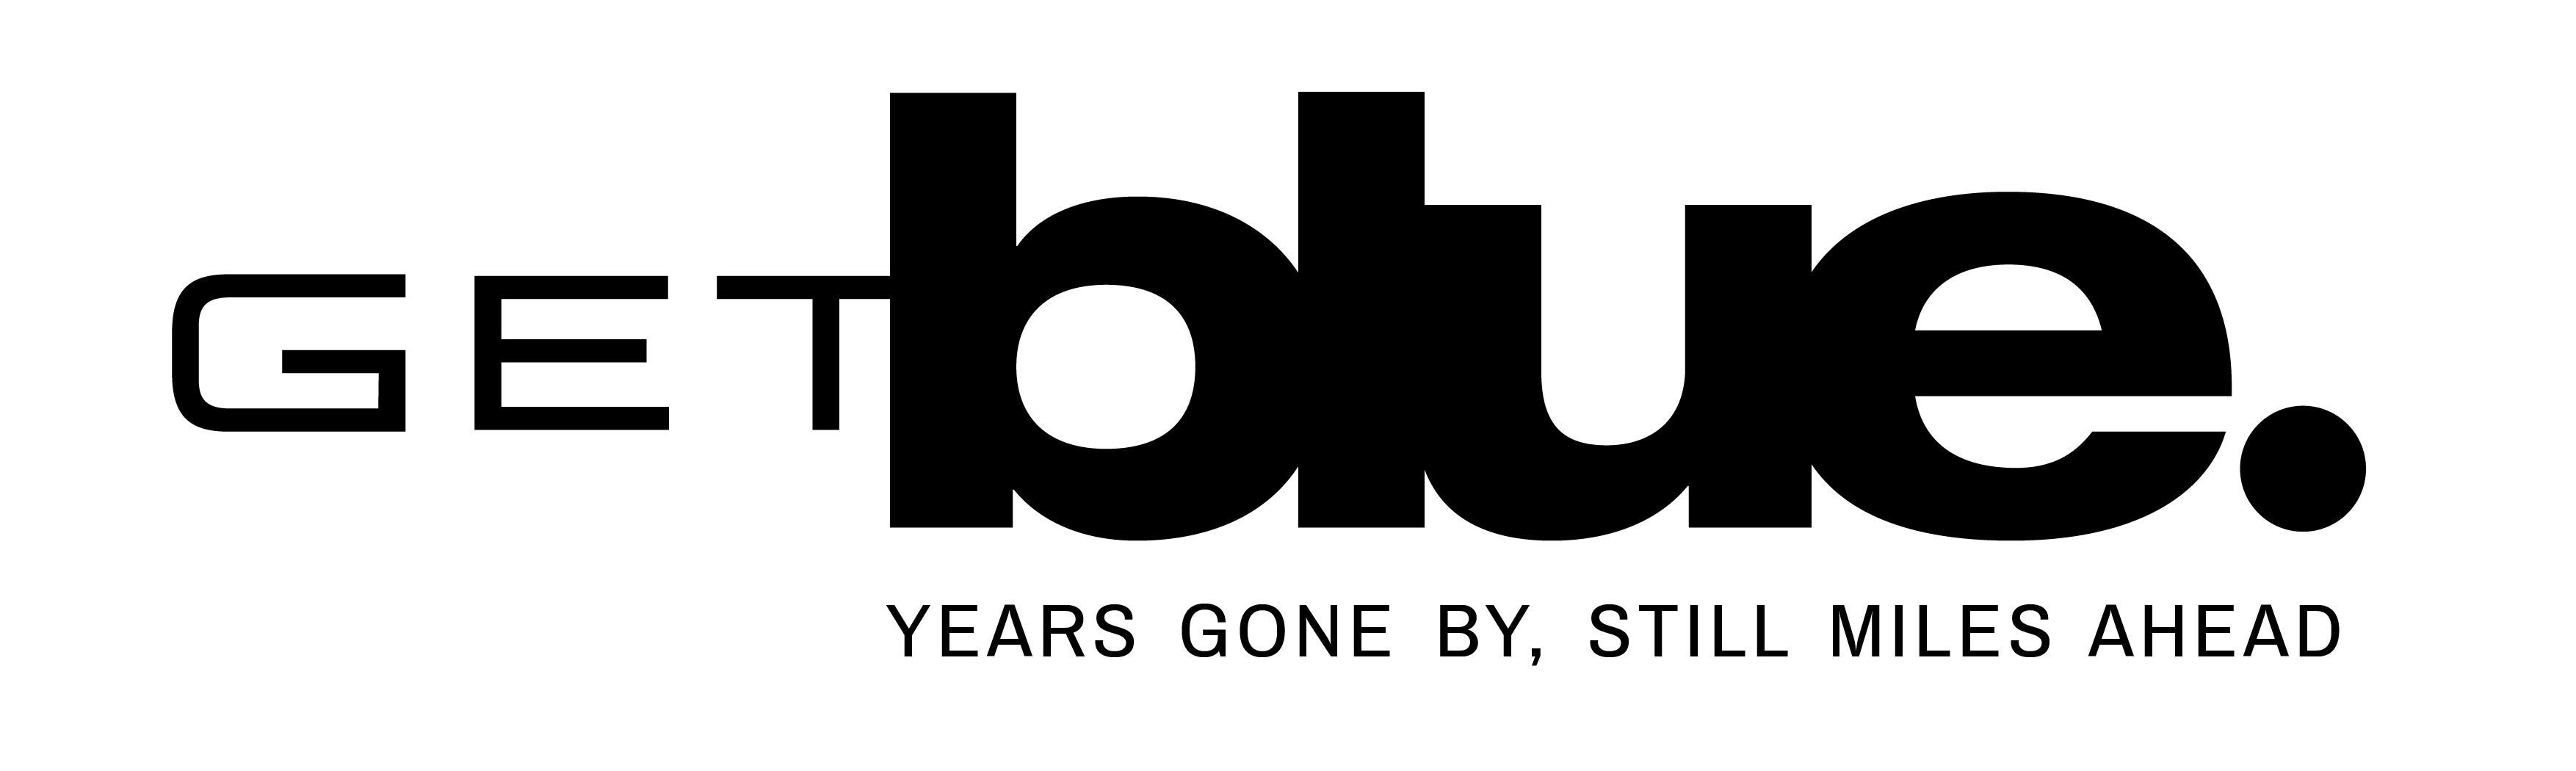 getblue-logo-zwart